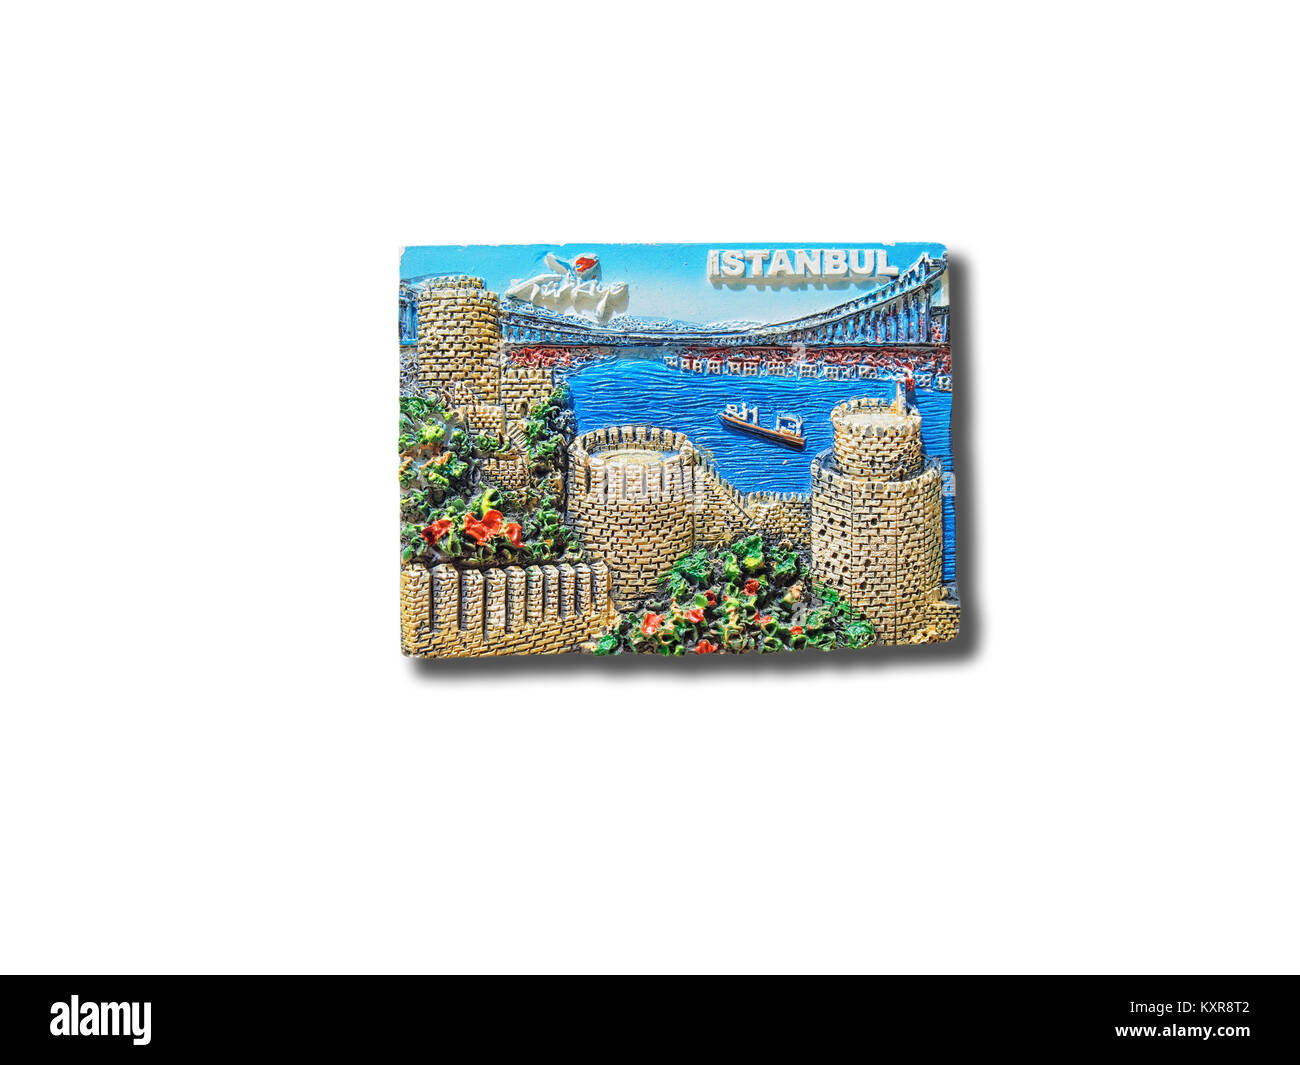 Istanbul (Turchia) souvenir magnete da frigorifero isolati su sfondo bianco Foto Stock